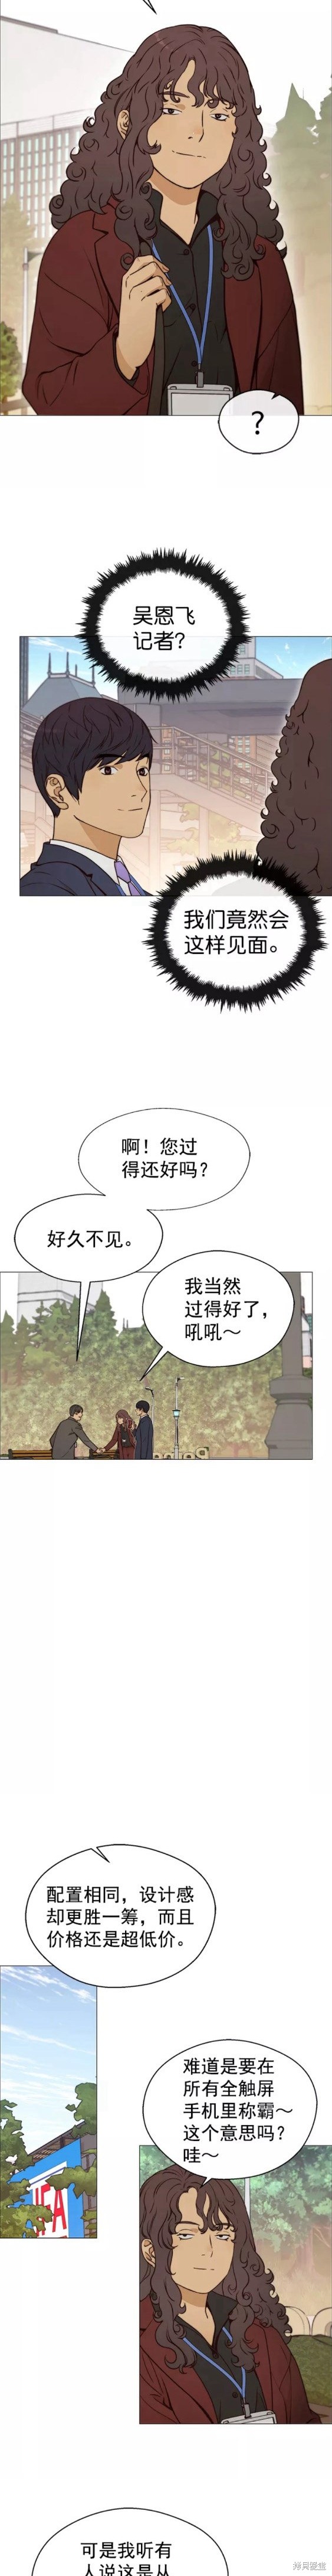 男子汉漫画,第117话13图